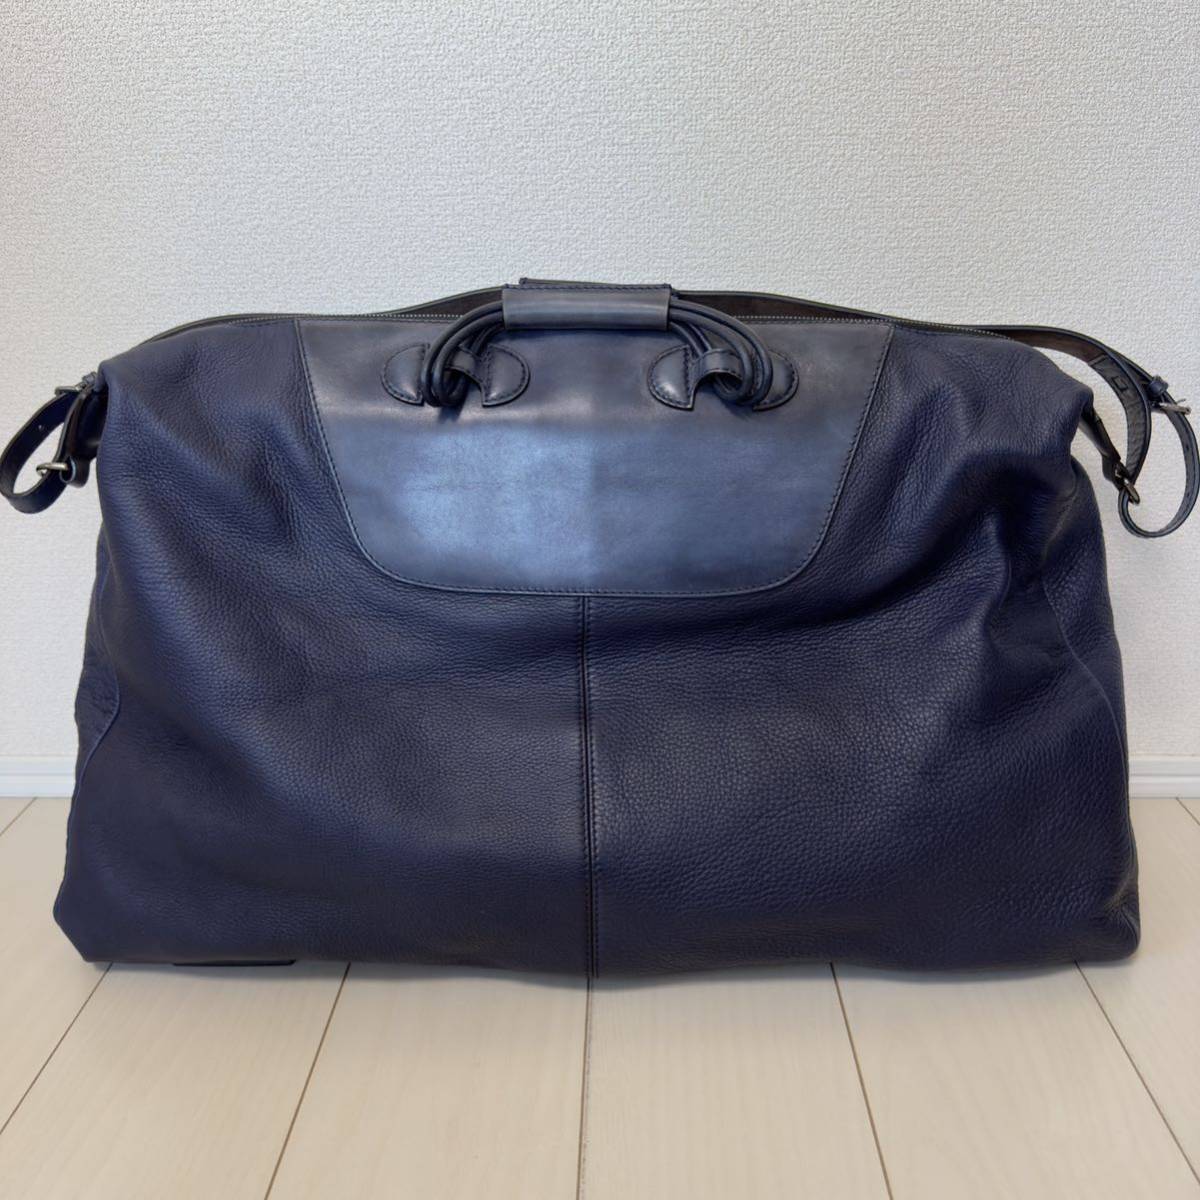  превосходный товар обычная цена 73.7 десять тысяч иен Berluti ограничение pa чай n кожа сумка "Boston bag" путешествие сумка голубой плечо ремень имеется стандартный товар 